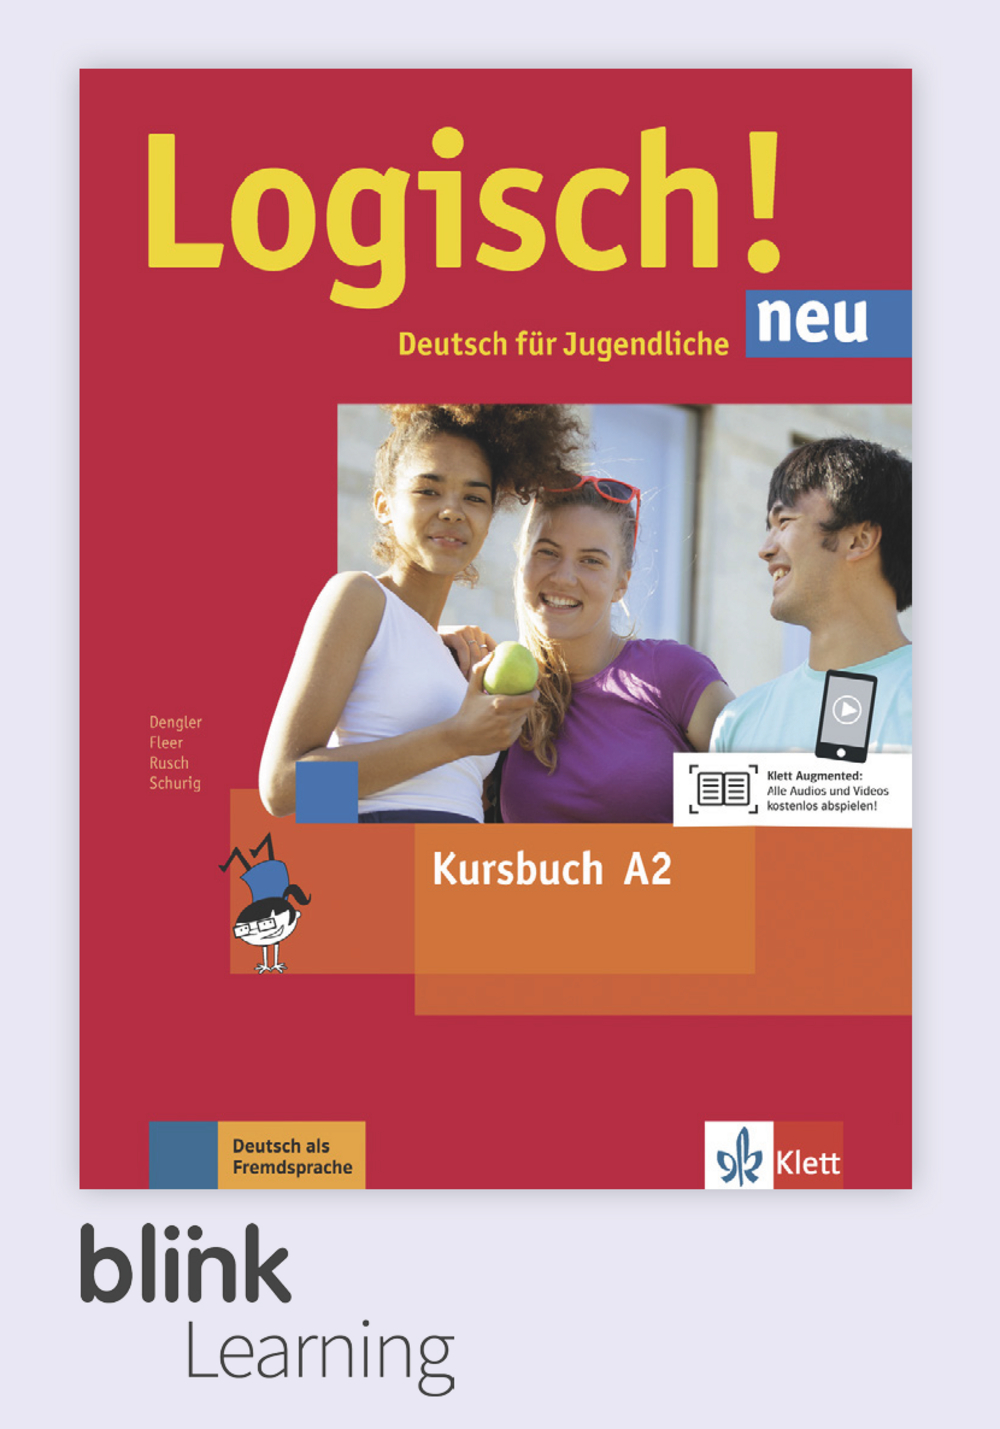 Logisch! NEU A2 Digital Kursbuch für Unterrichtende/ Цифровой учебник для учителя